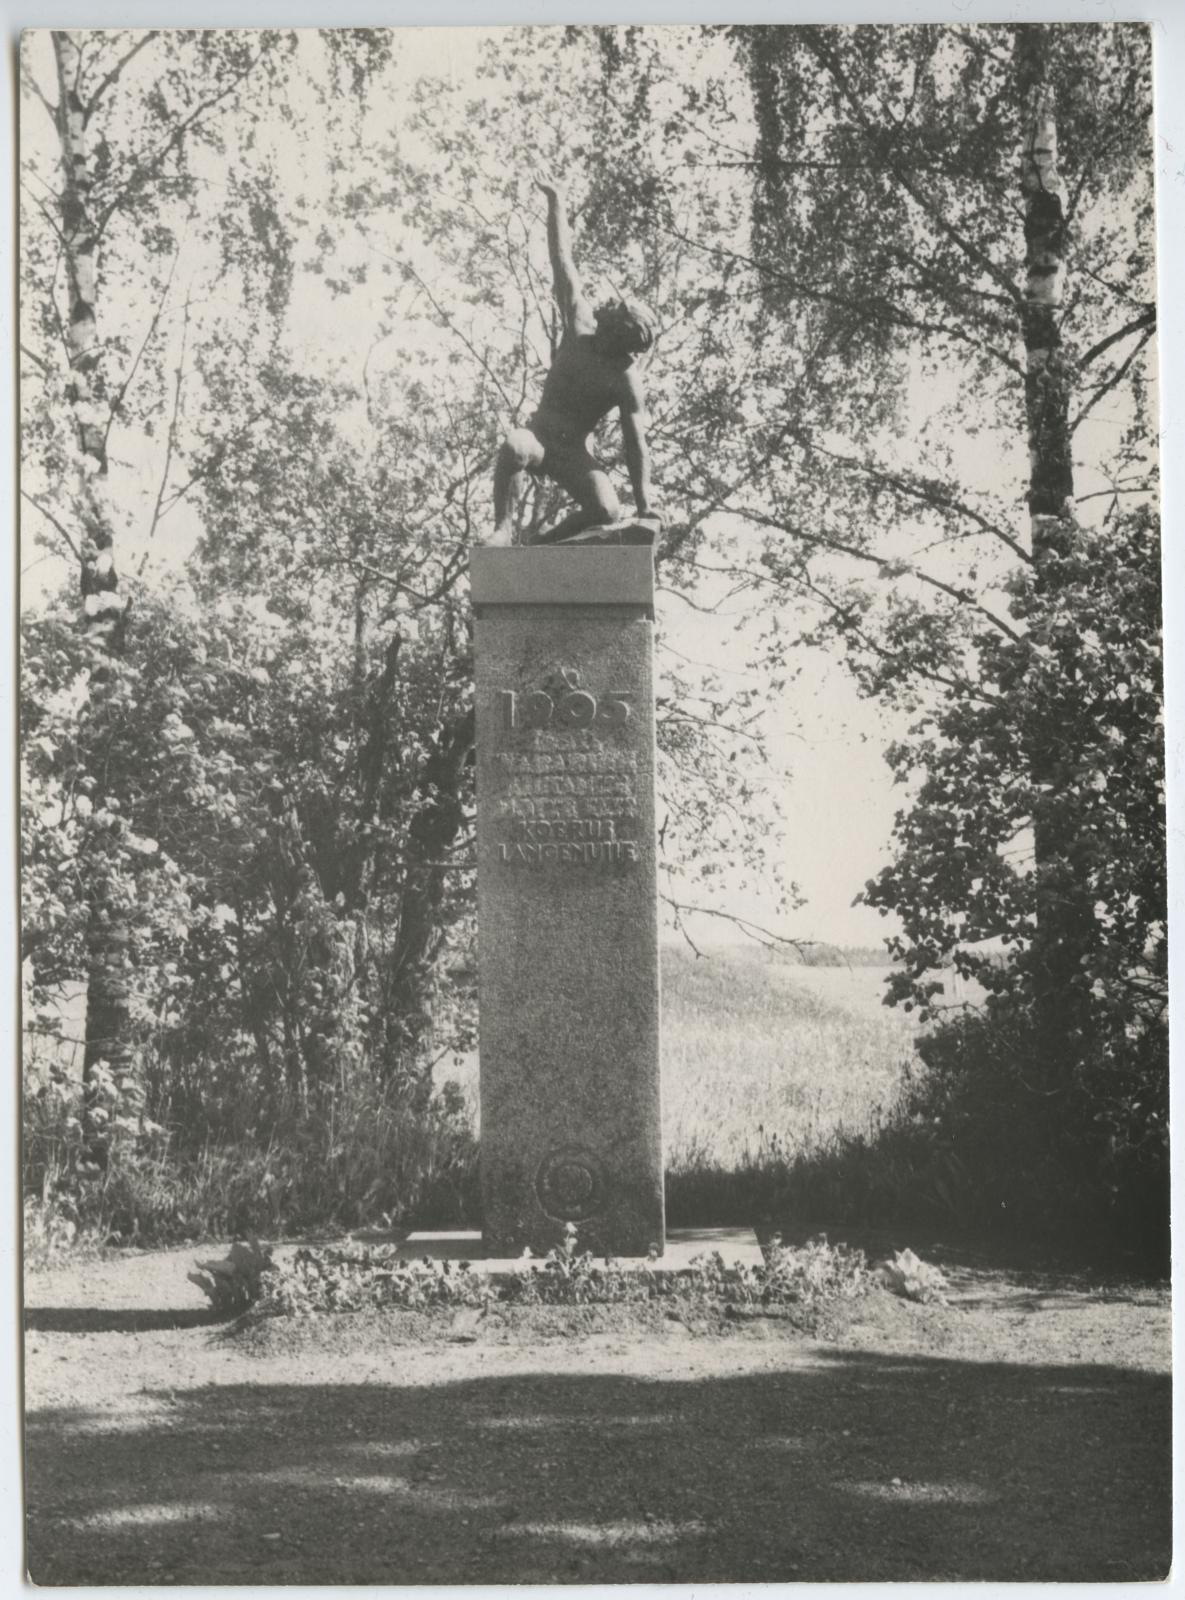 I lennu aktiivi ekskursioon Eduard Viiraltiga seotud paikadesse 12. juunil 1966. 1905.a. revolutsioonis langenute mälestussammas Koerus.